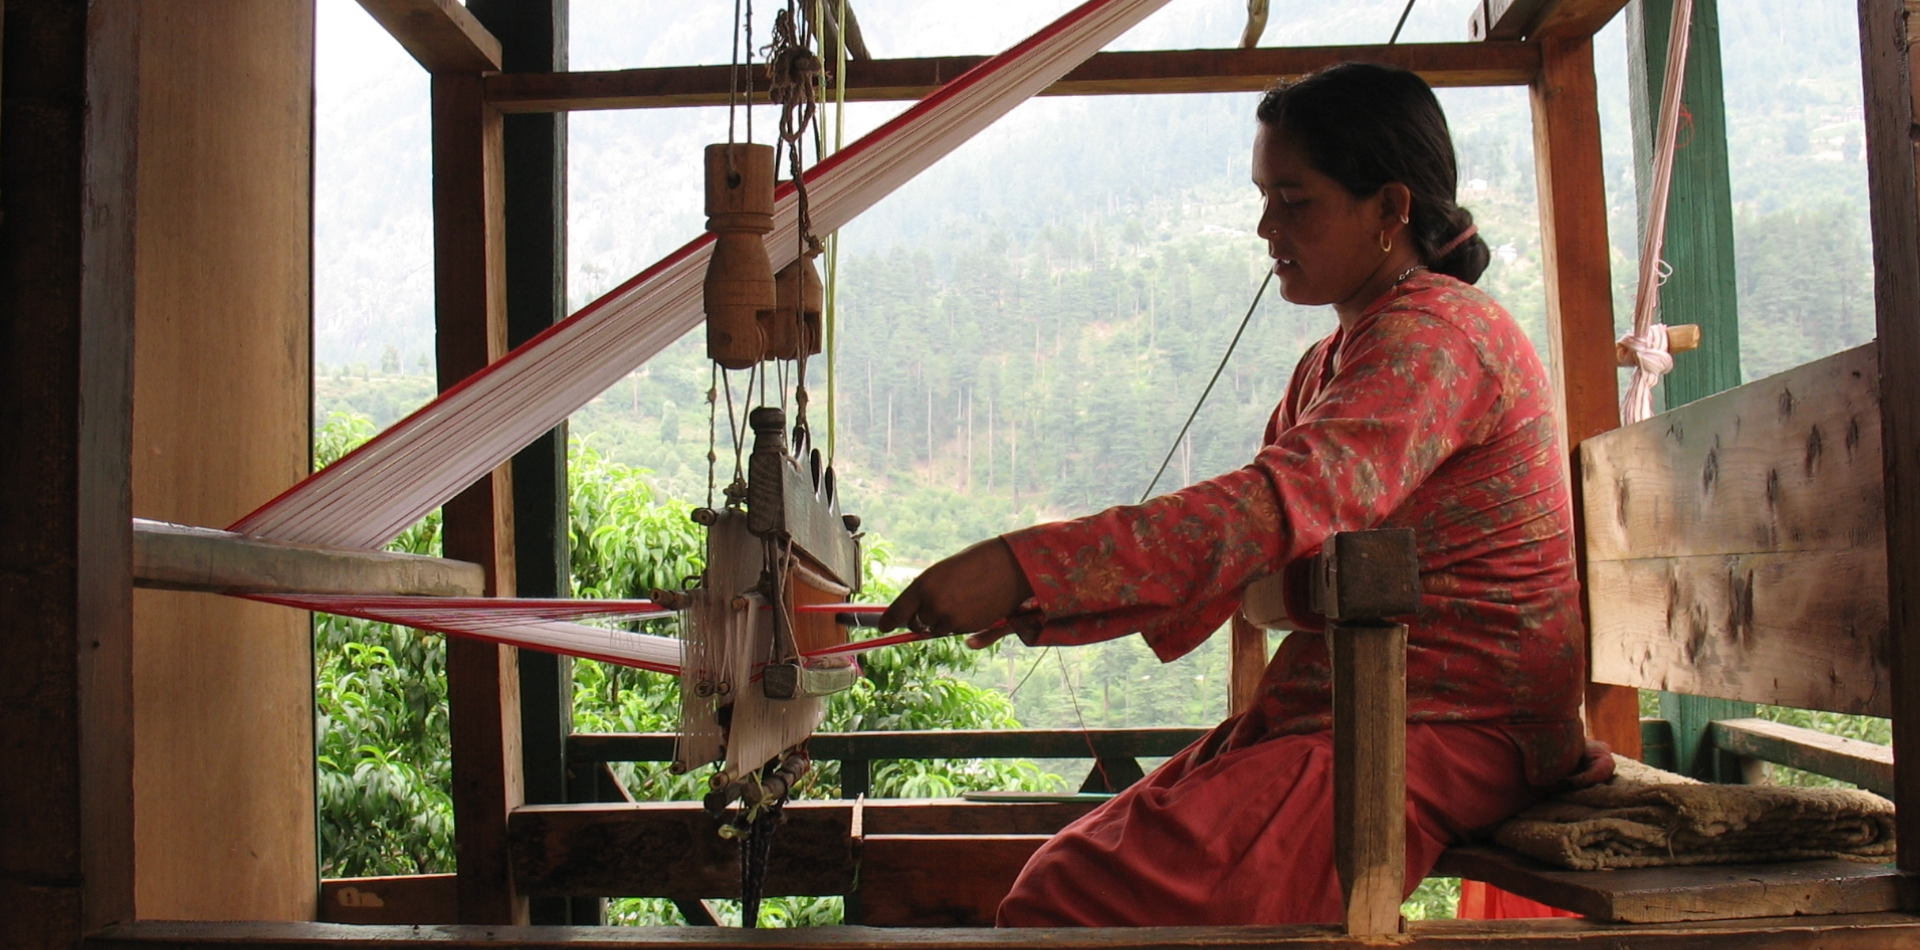 Female weaver working on a frame loom.